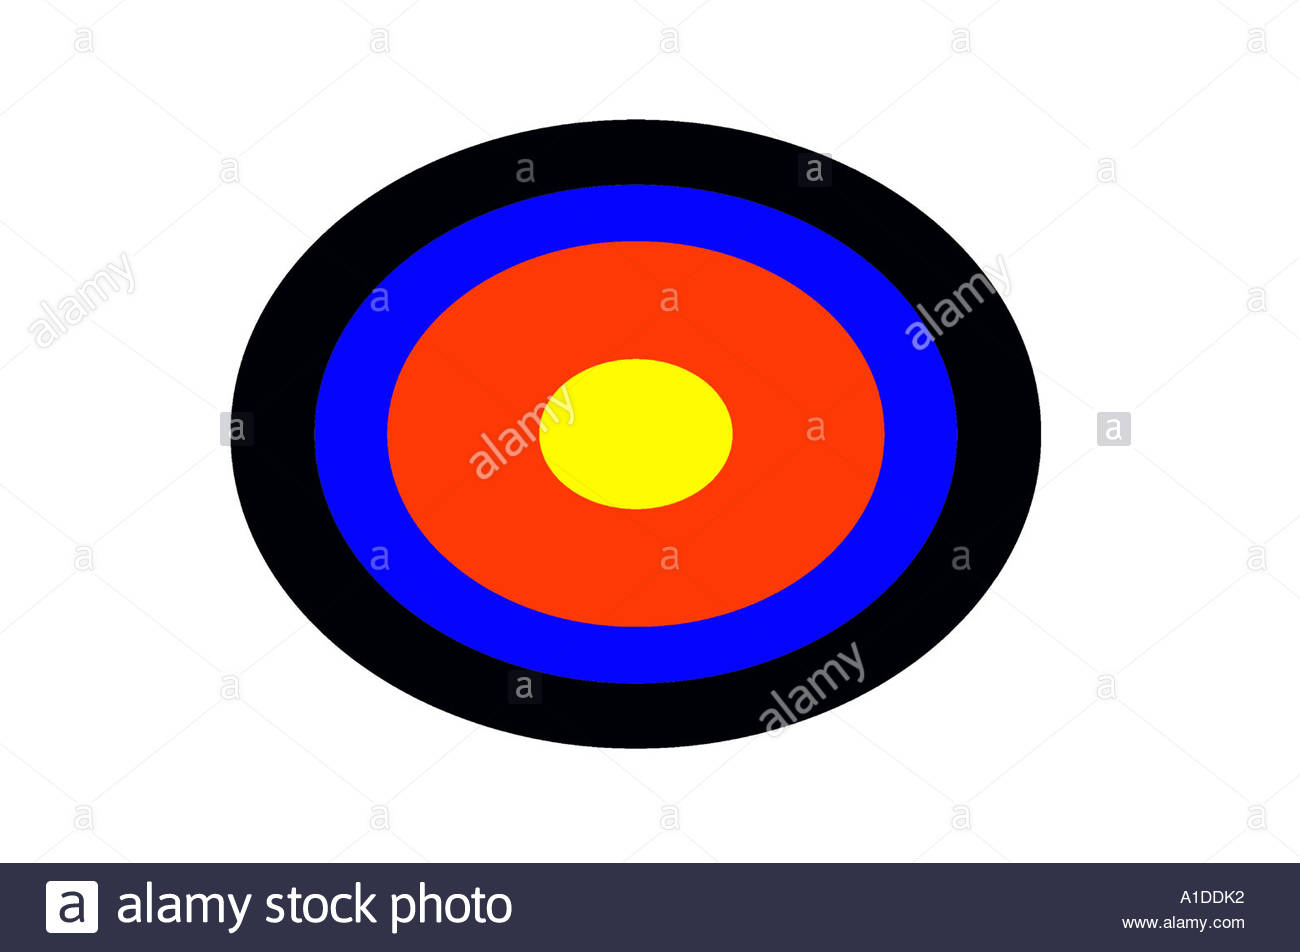 A shooting target and bullseye Stock Photo